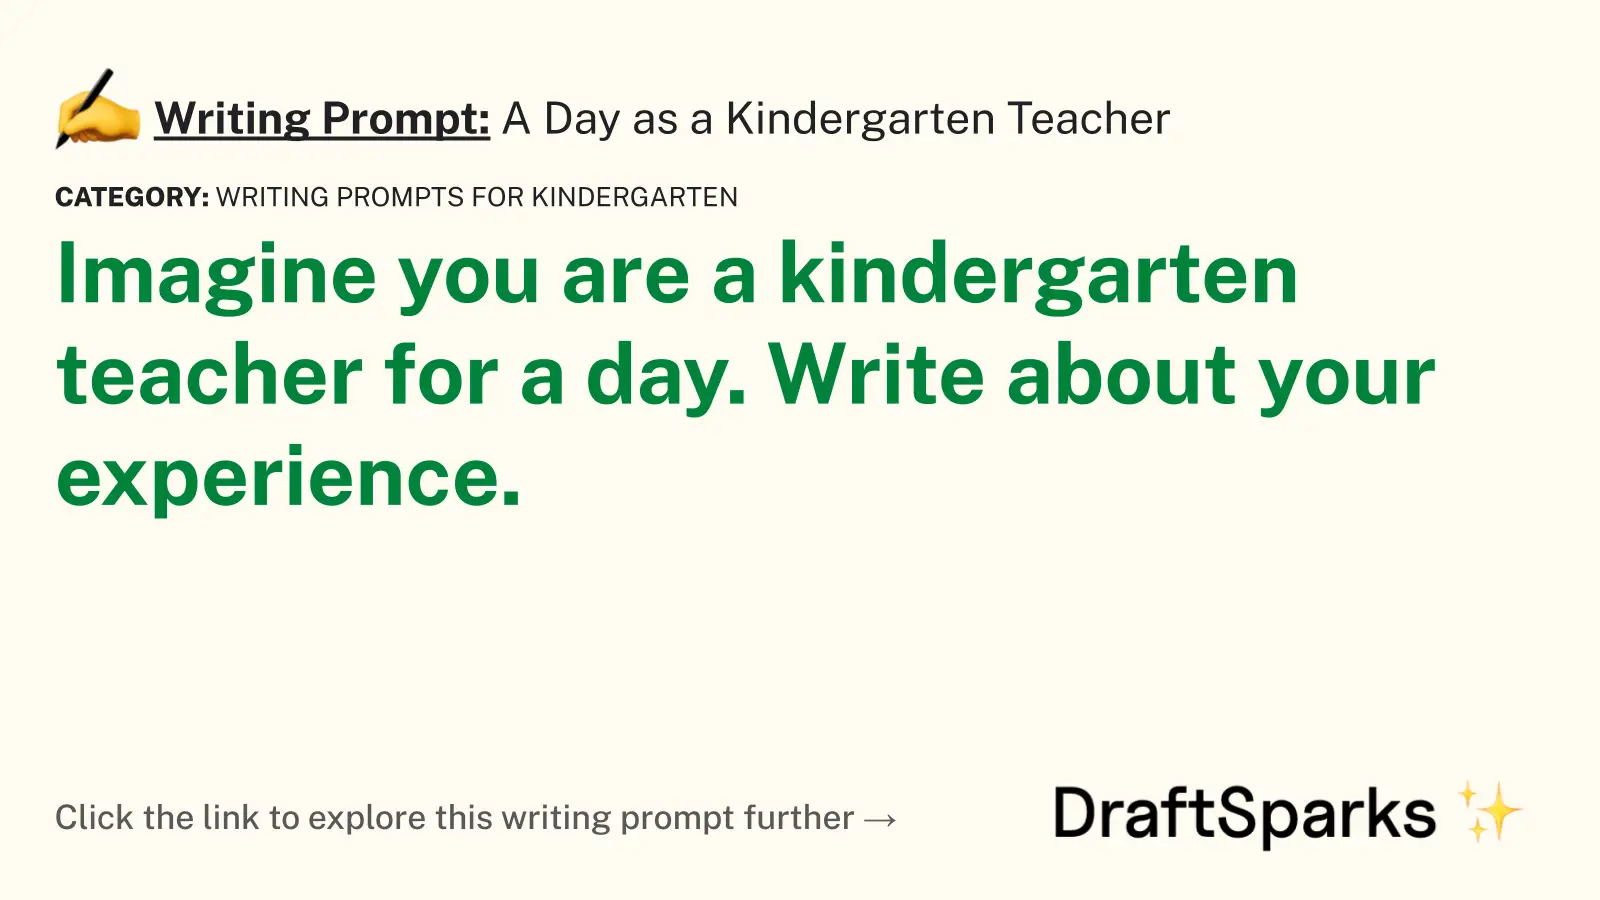 A Day as a Kindergarten Teacher